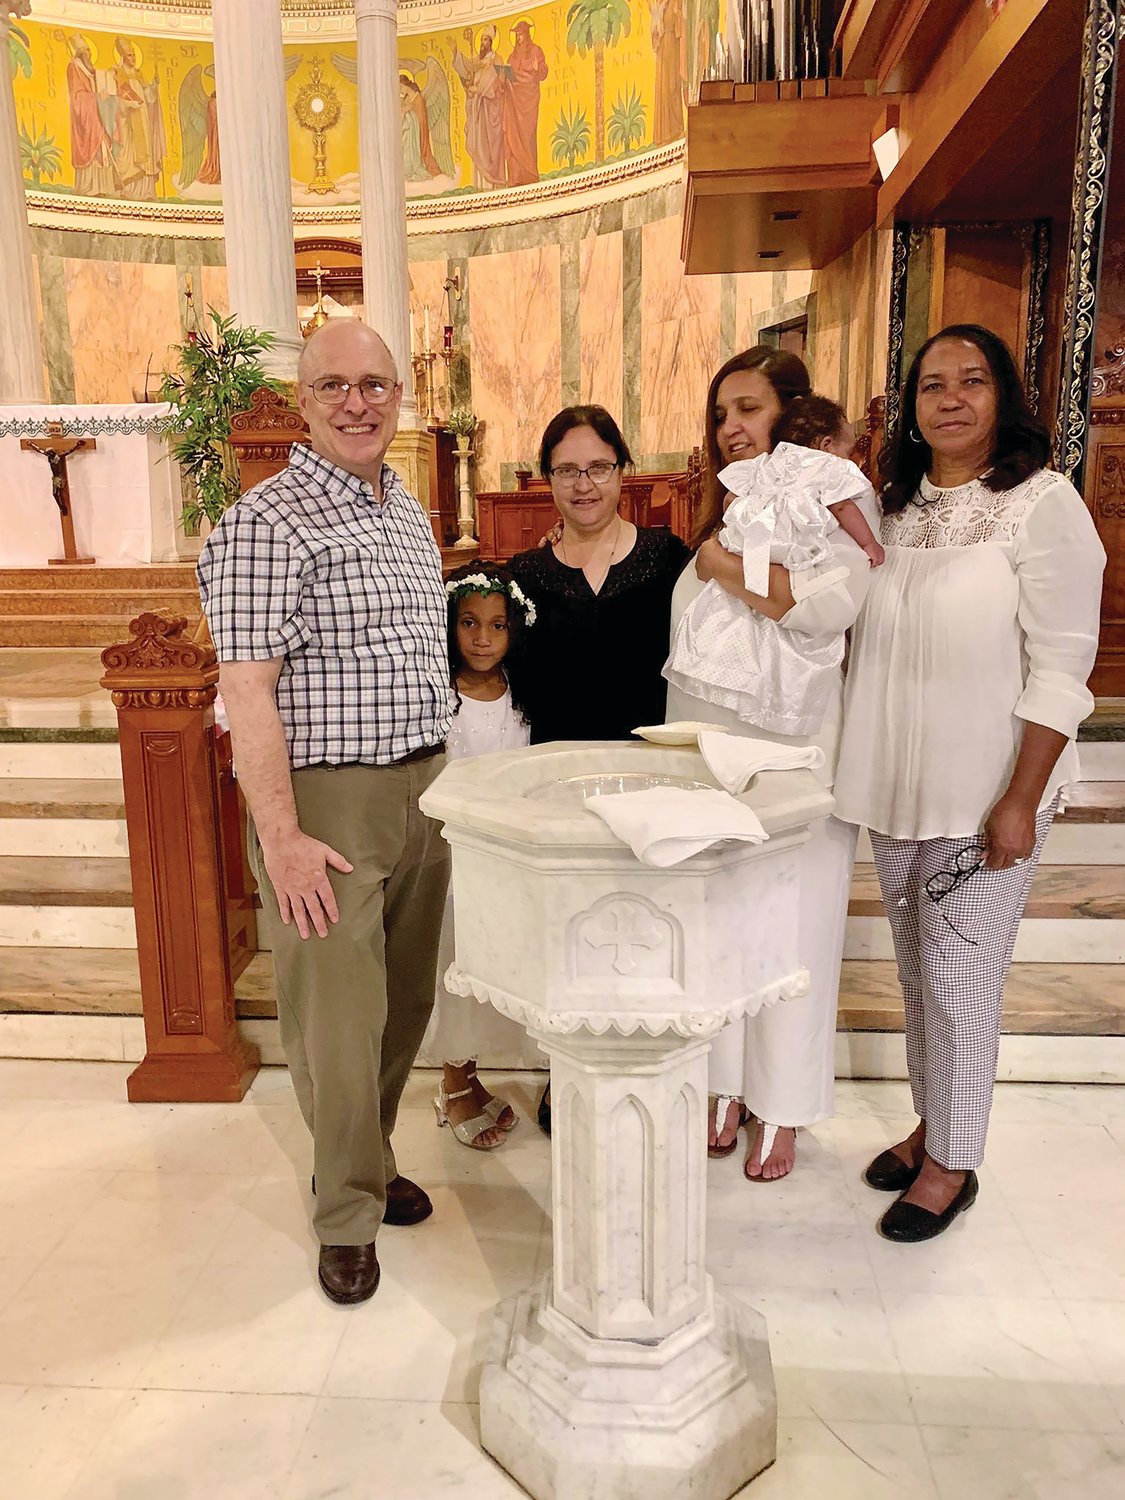 Marissa y su esposo Thomas junto con Vilma y su bebé en Blessed Sacrament. Marissa Kelly sirve en el proyecto Gabriel, un ministerio diocesano de los servicios sociales católicos de Rhode Island Island